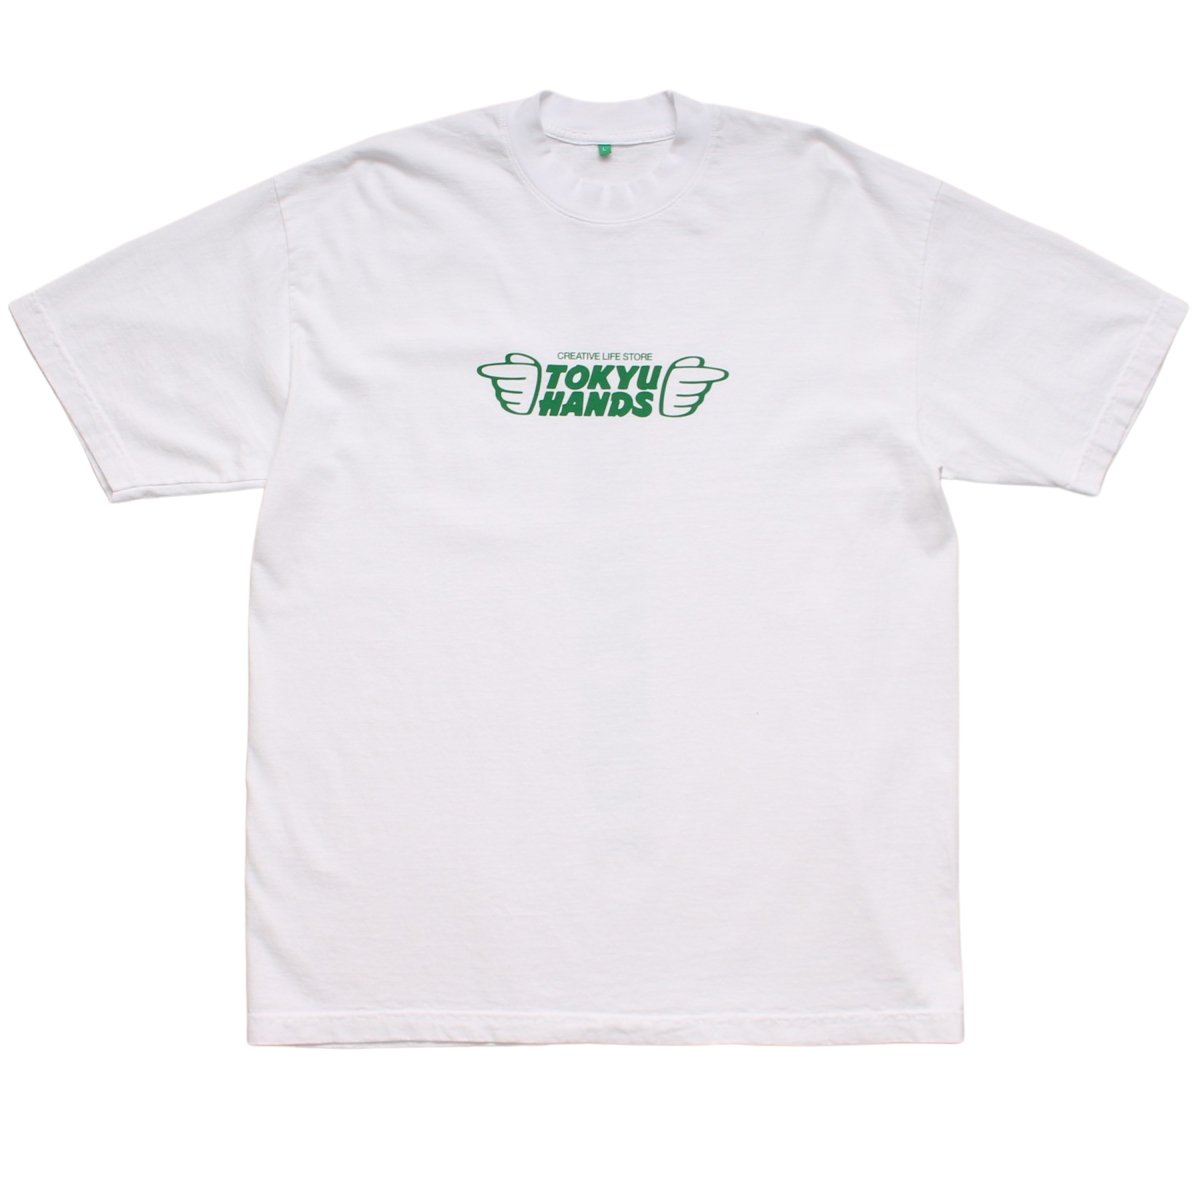 Tokyu Hands T-Shirt【WHITE】